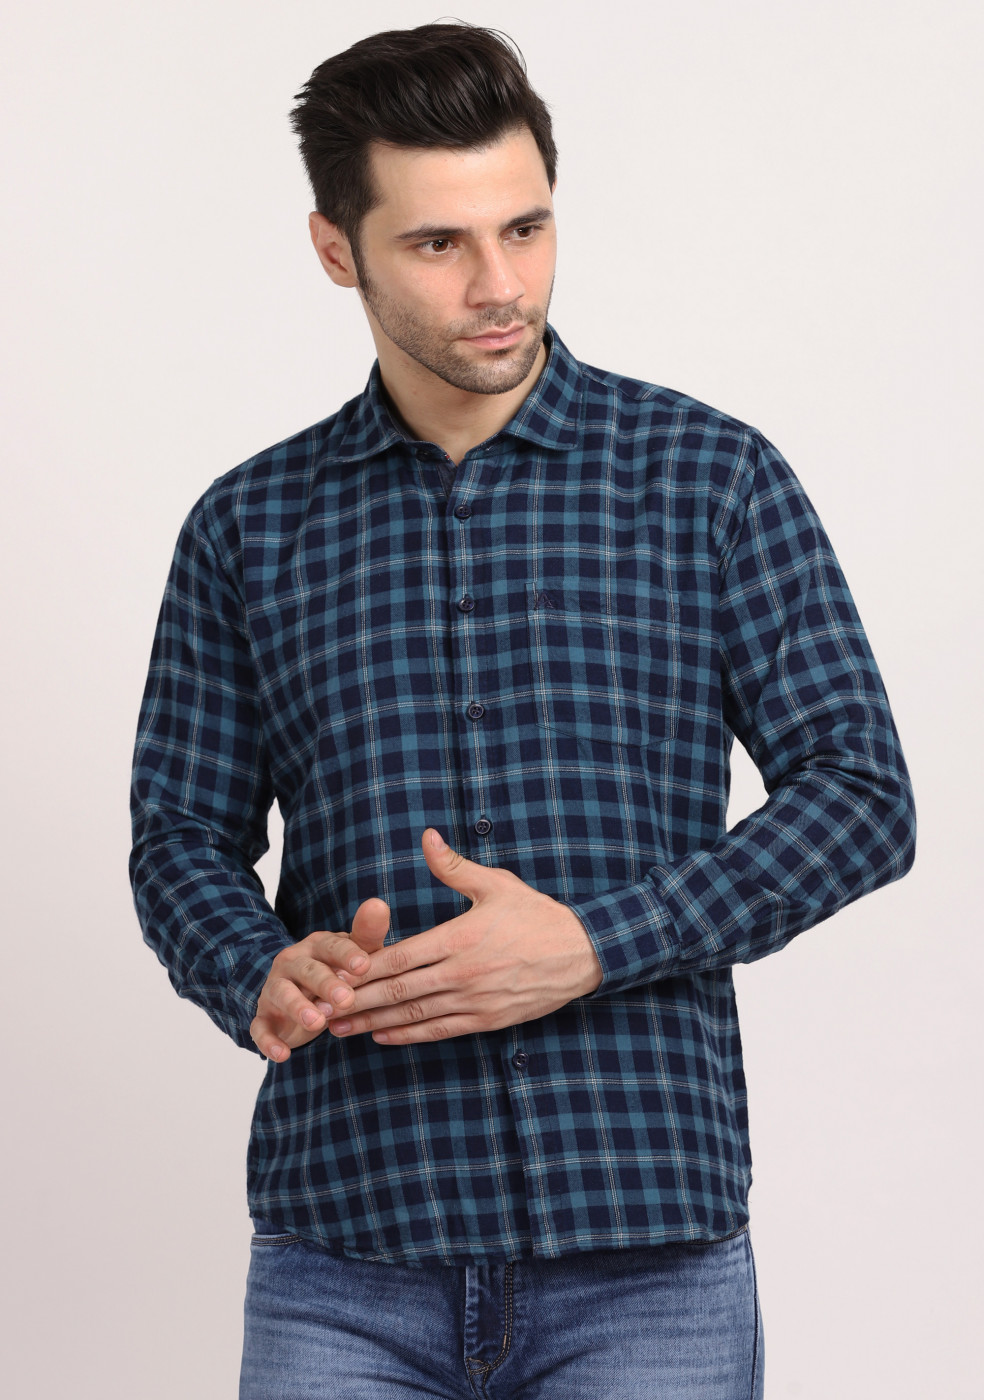 ASHTOM Turquoise Blue Check Regular Fit Cotton Shirt For Men